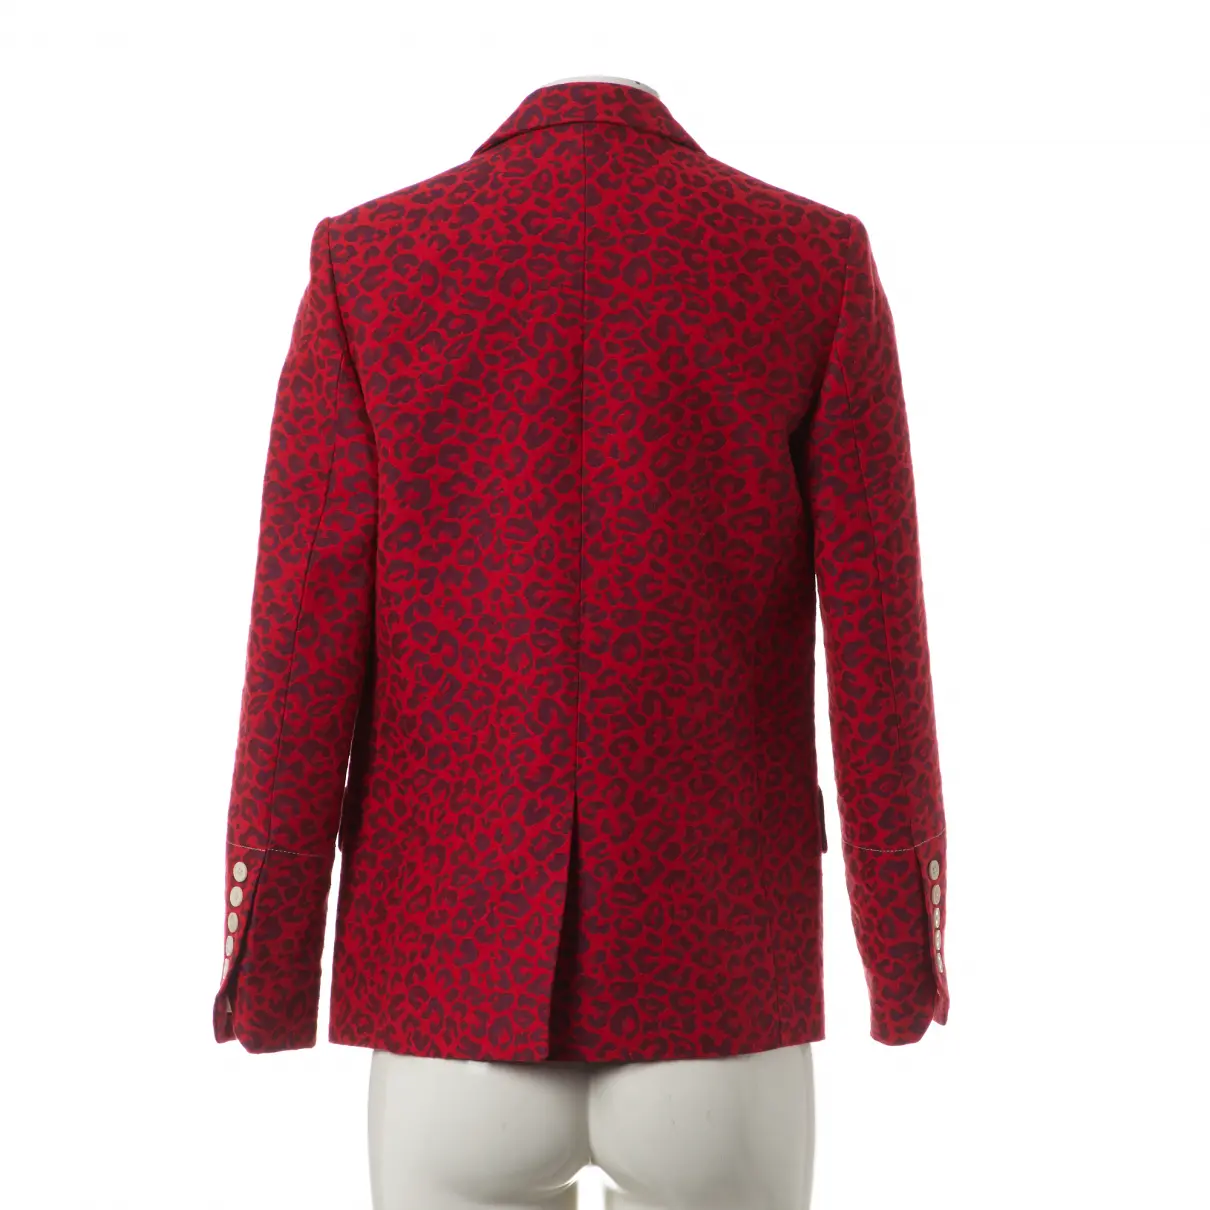 Buy Zadig & Voltaire Red Cotton Jacket online